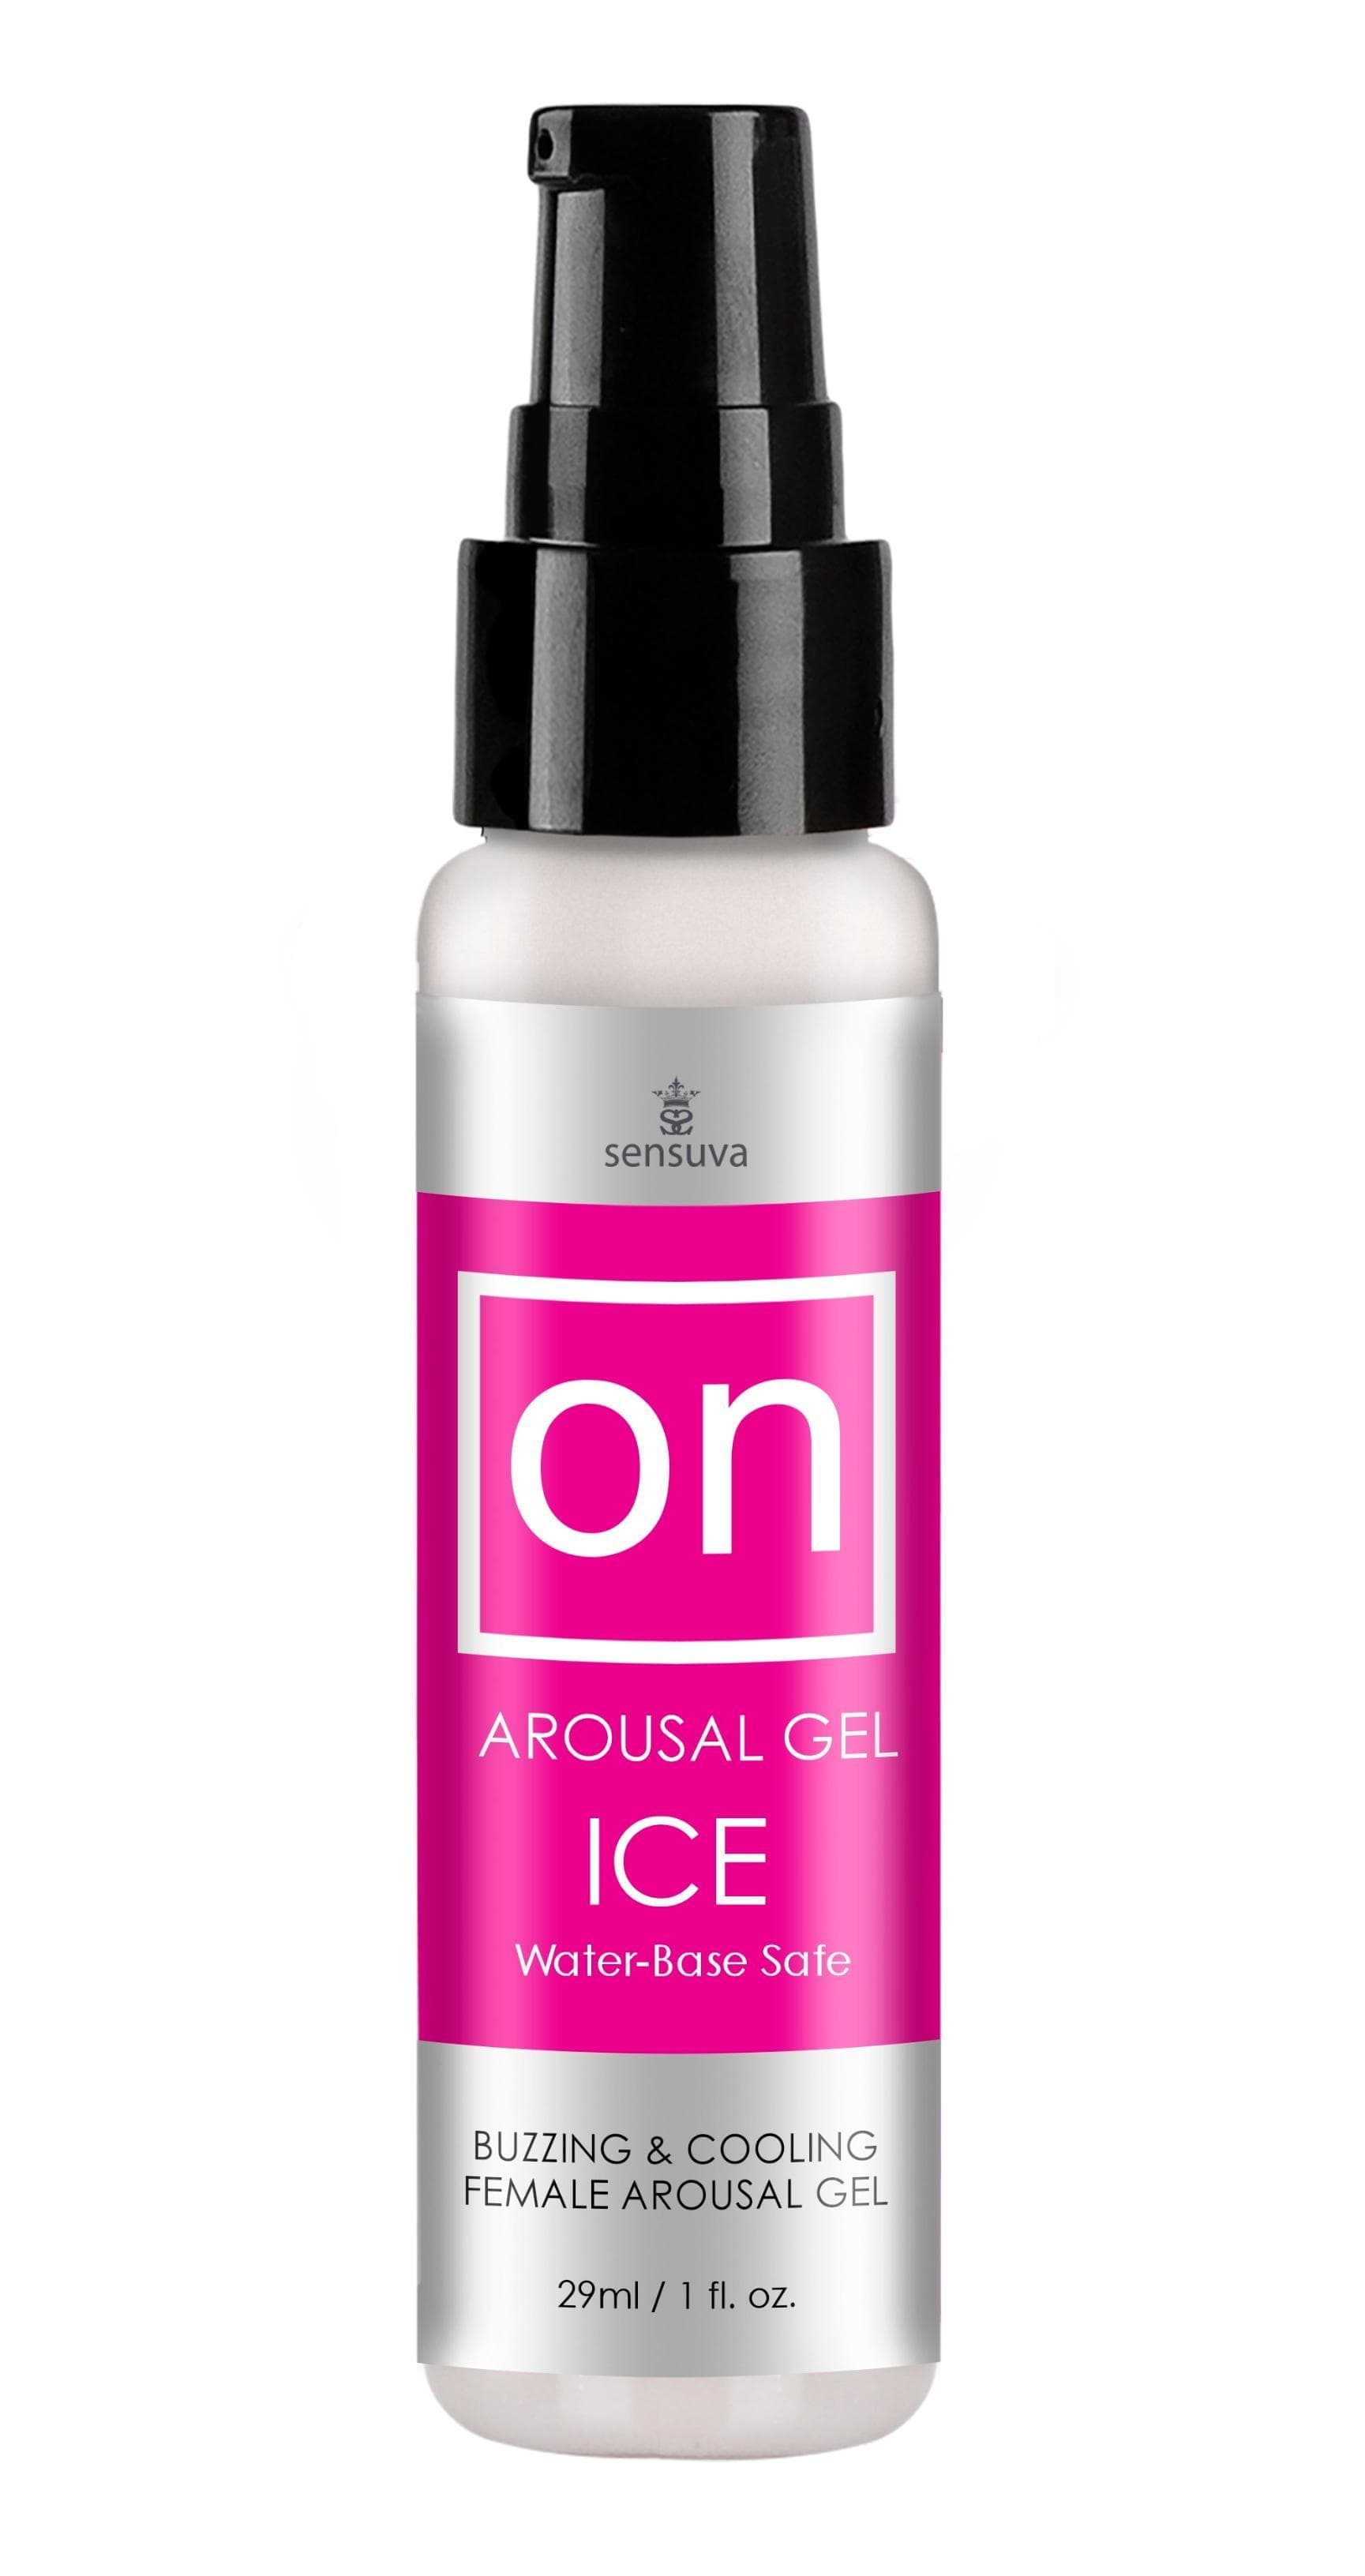 on arousal gel ice 1 fl oz bottle